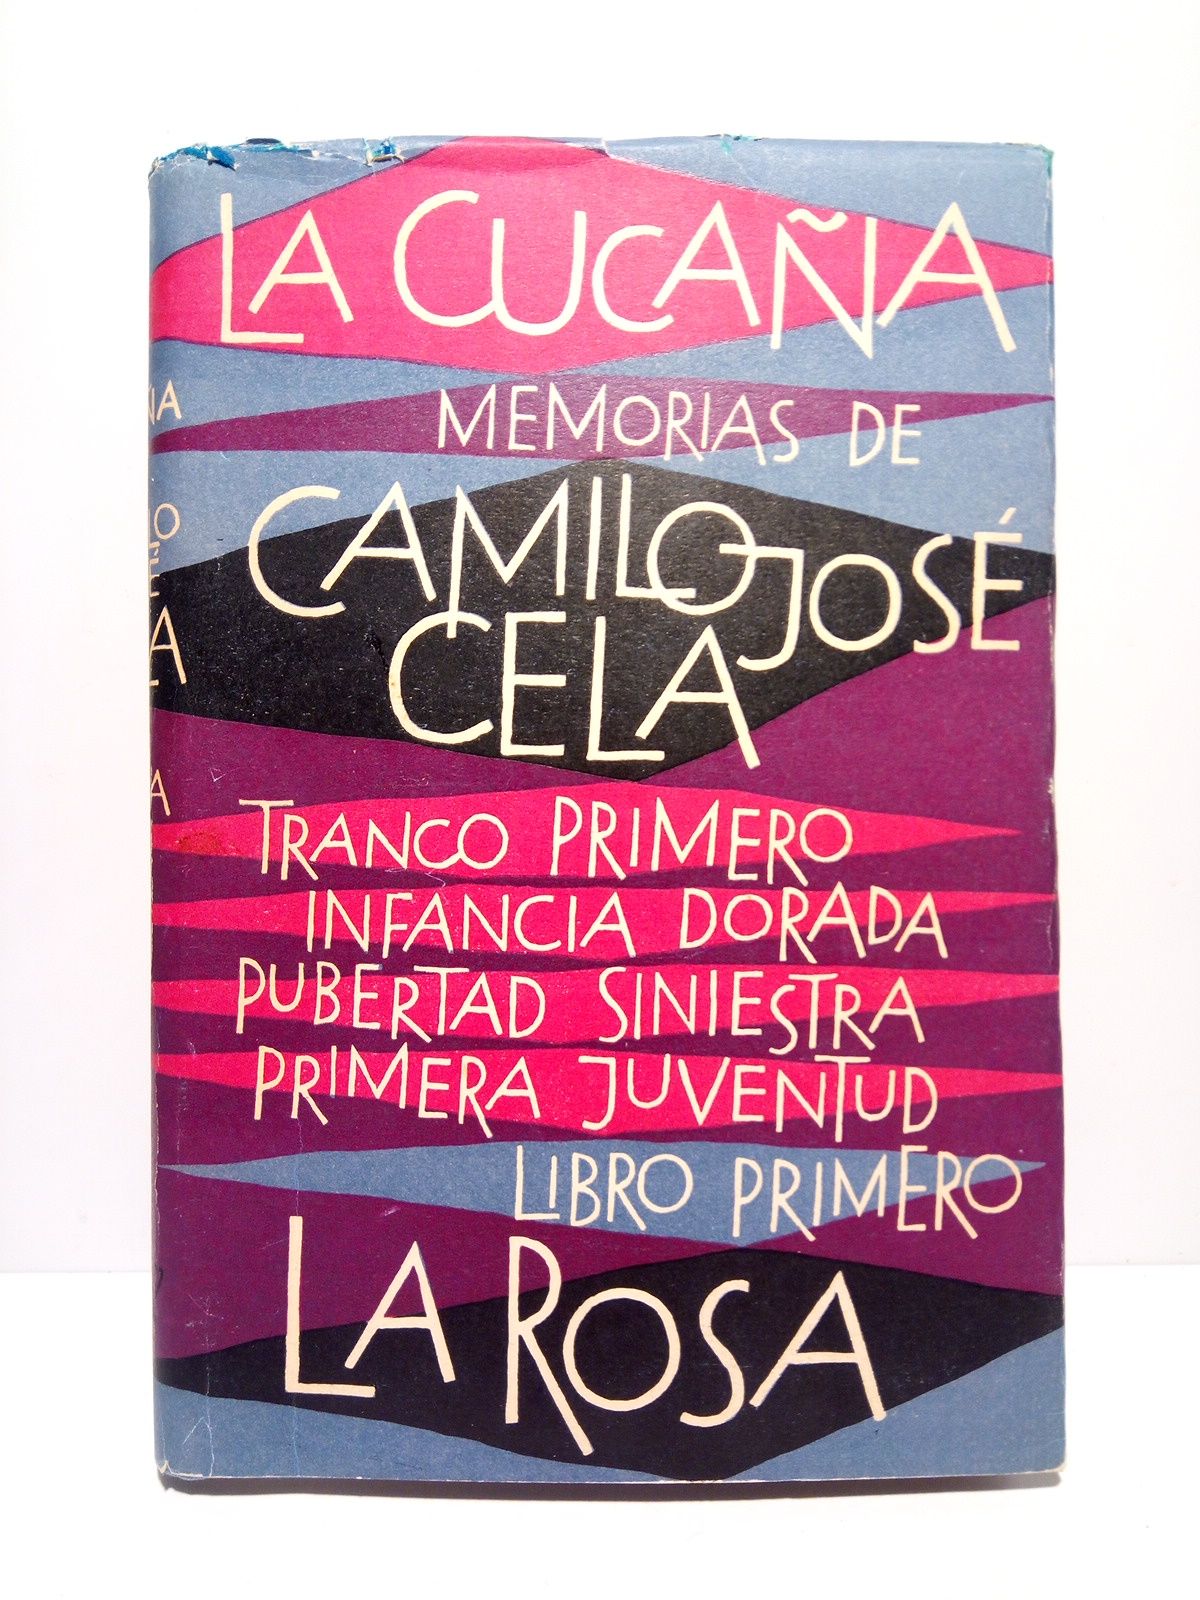 CELA, Camilo Jos - La Cucaa: Memorias de Camilo Jos Cela. Tranco primero: Infancia dorada, pubertad siniestra, primera juventud. Libro Primero: LA ROSA